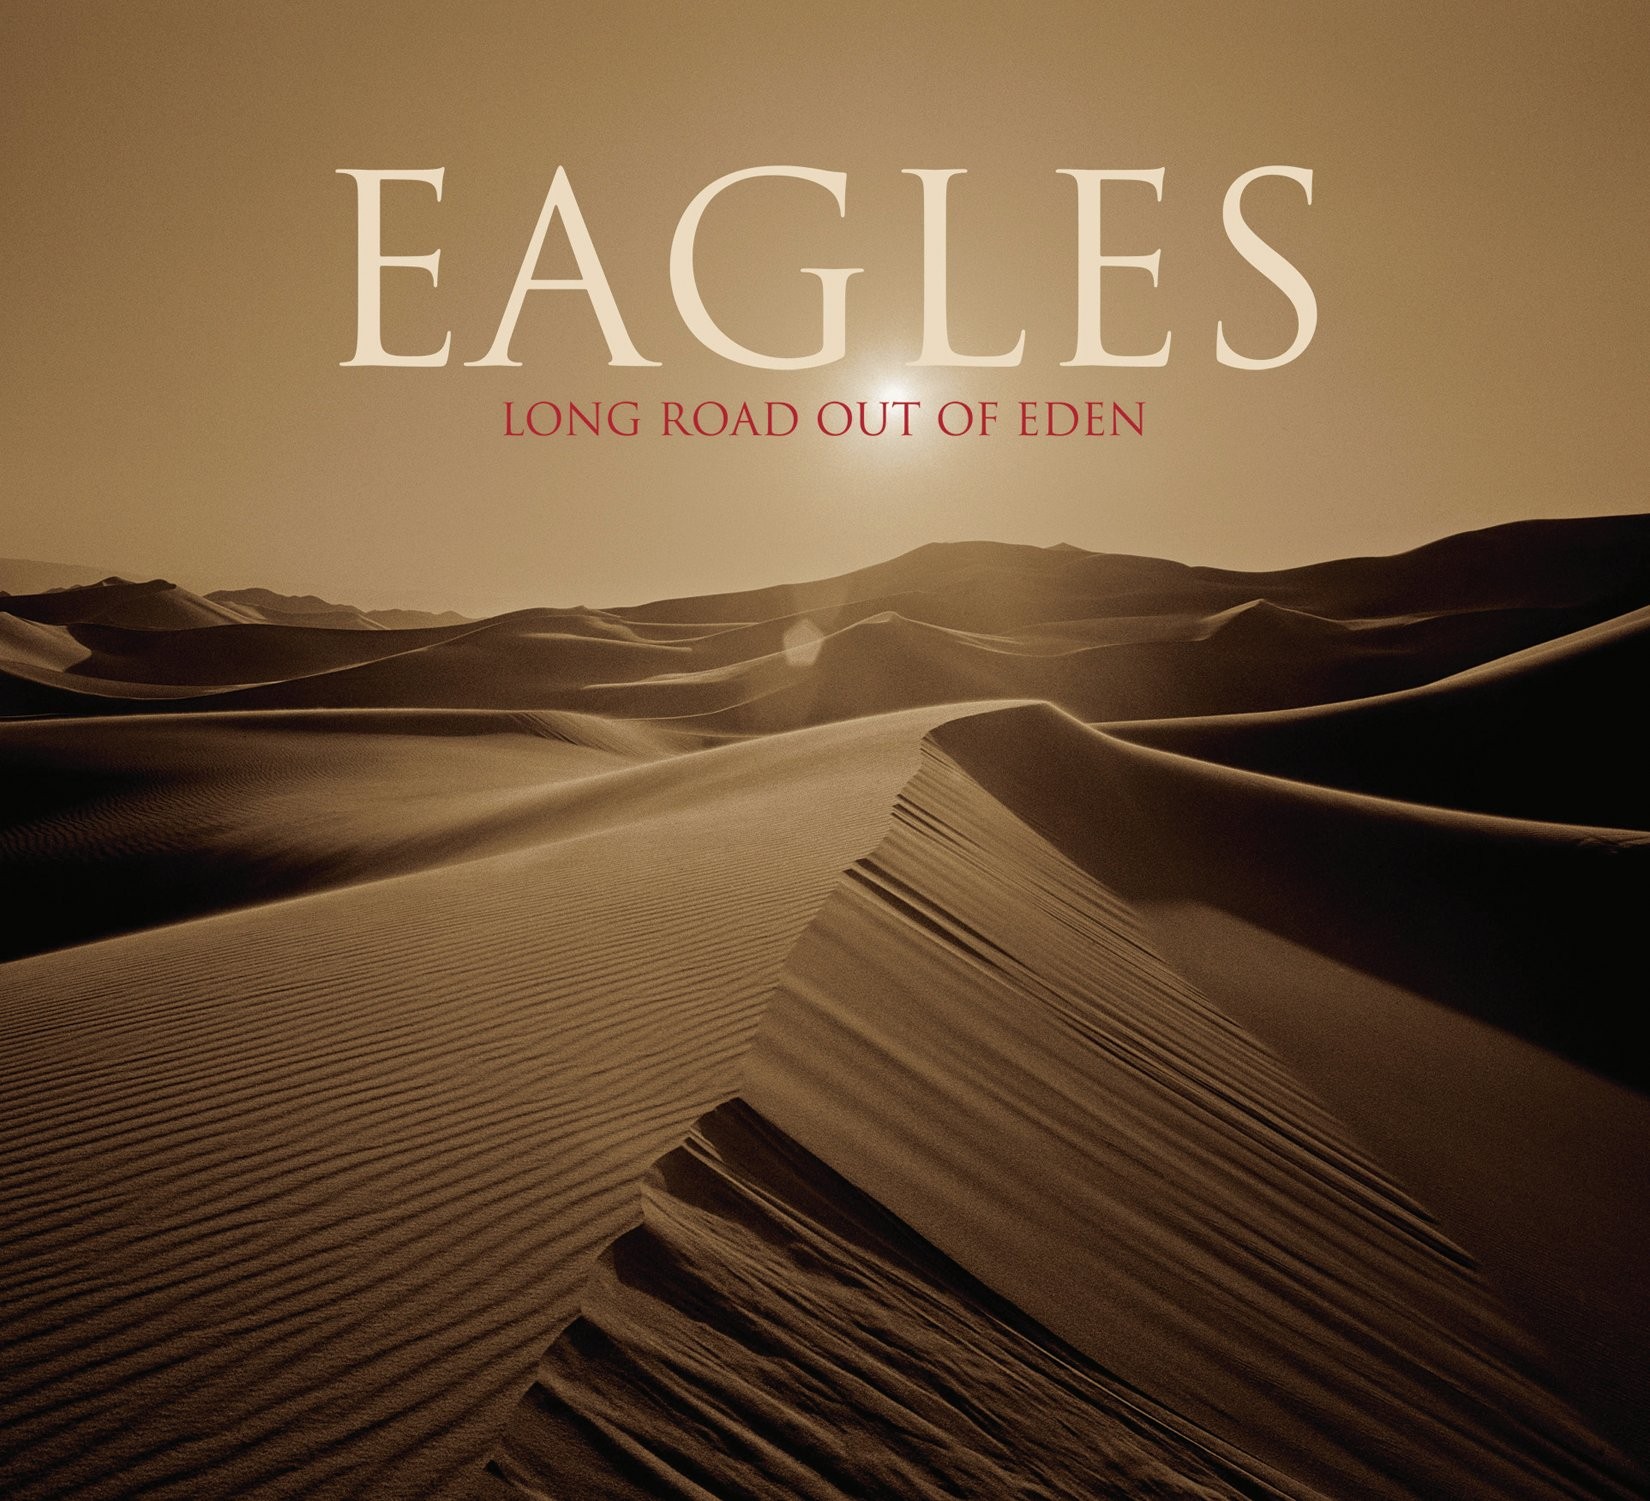 ซีดีเพลง CD 2007 - Eagles - Long Road Out Of Eden ชุดนี้มี2แผ่น CD 1&2,ในราคาพิเศษสุดเพียง259บาท